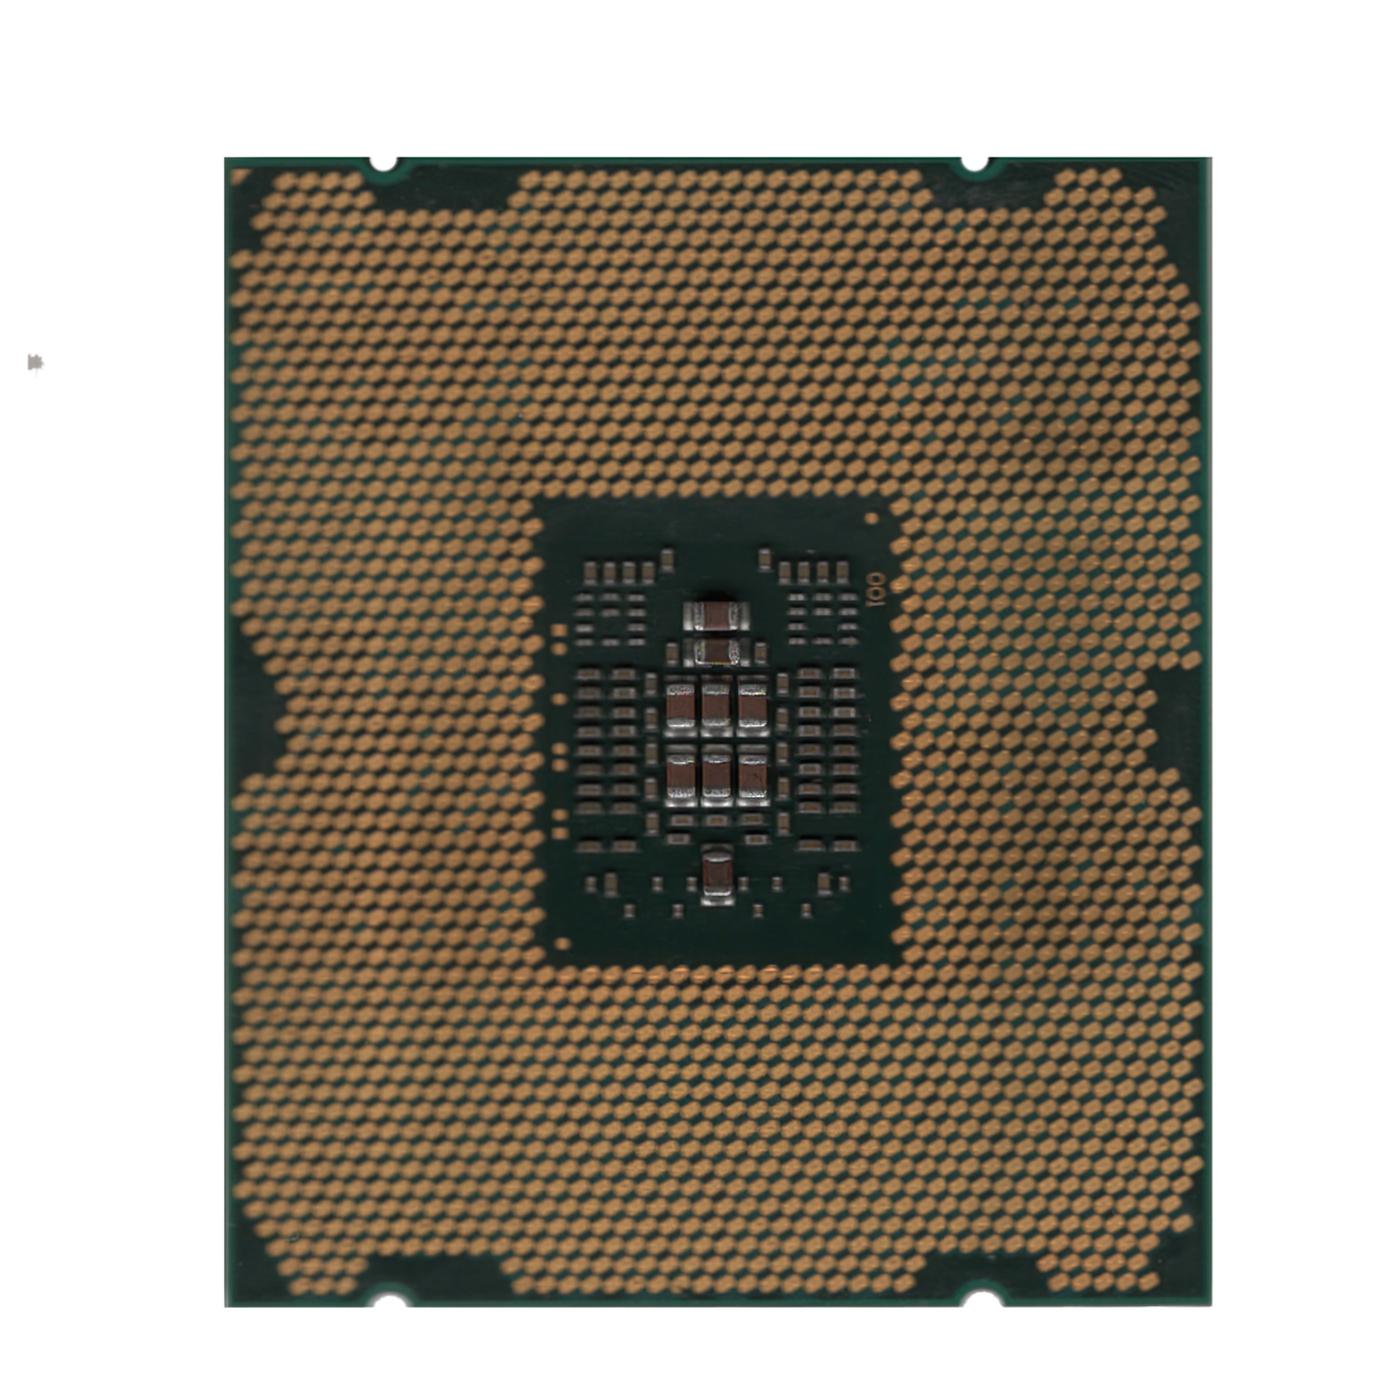 Preowned SR0LA Intel Xeon Processor E5-2609, 4 Cores, 10M Cache, Fully Tested